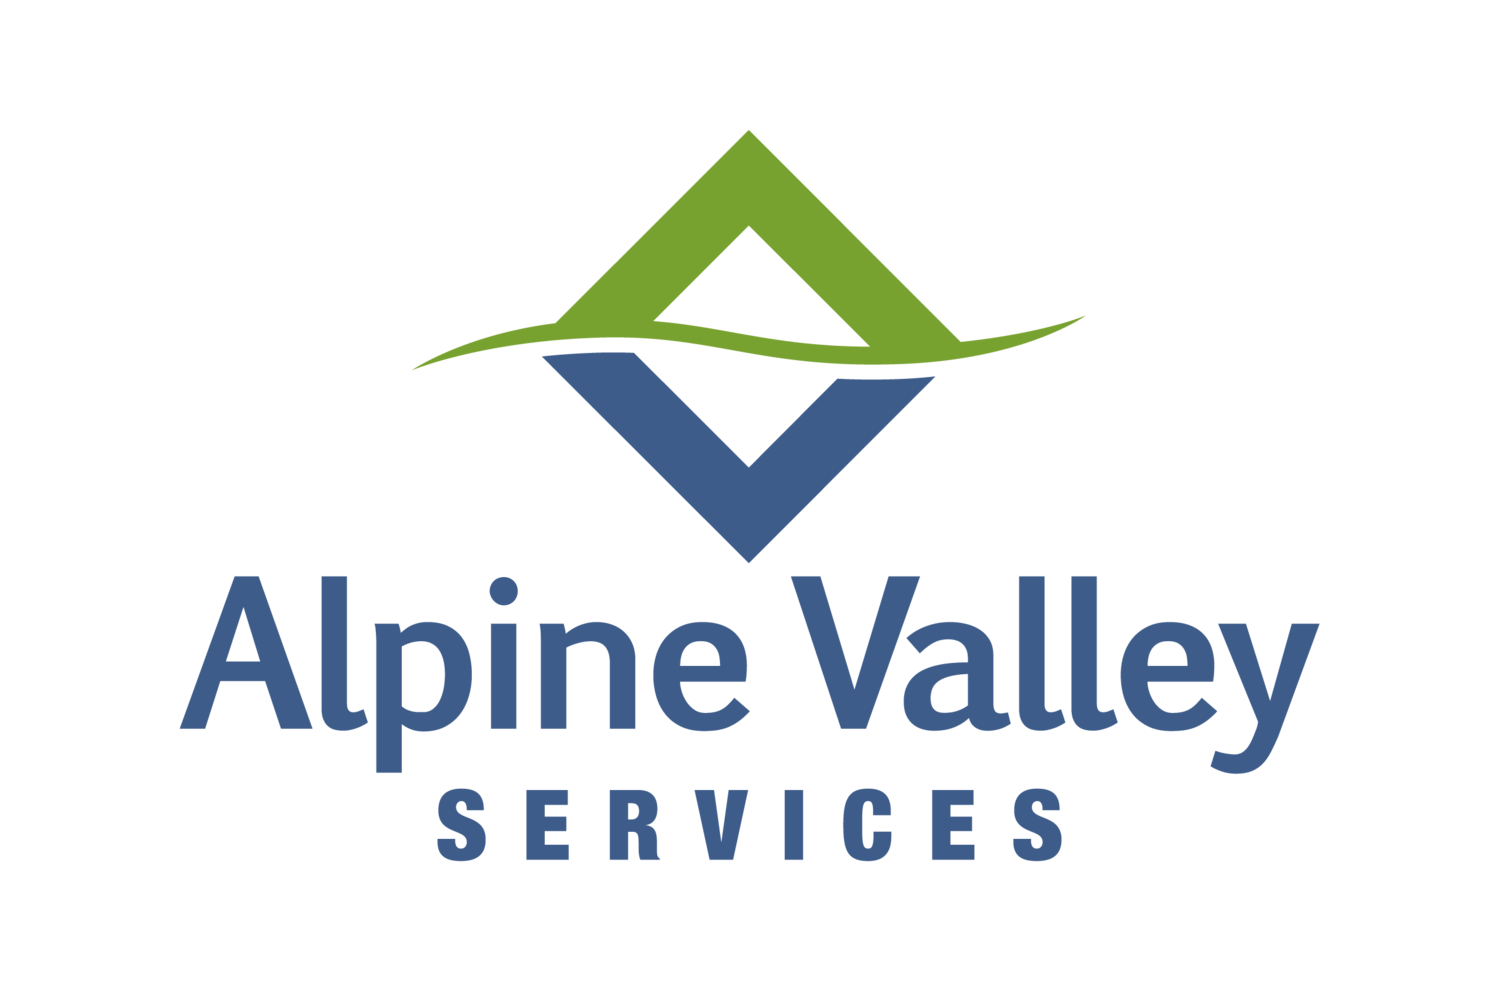 Alpine Valley Services